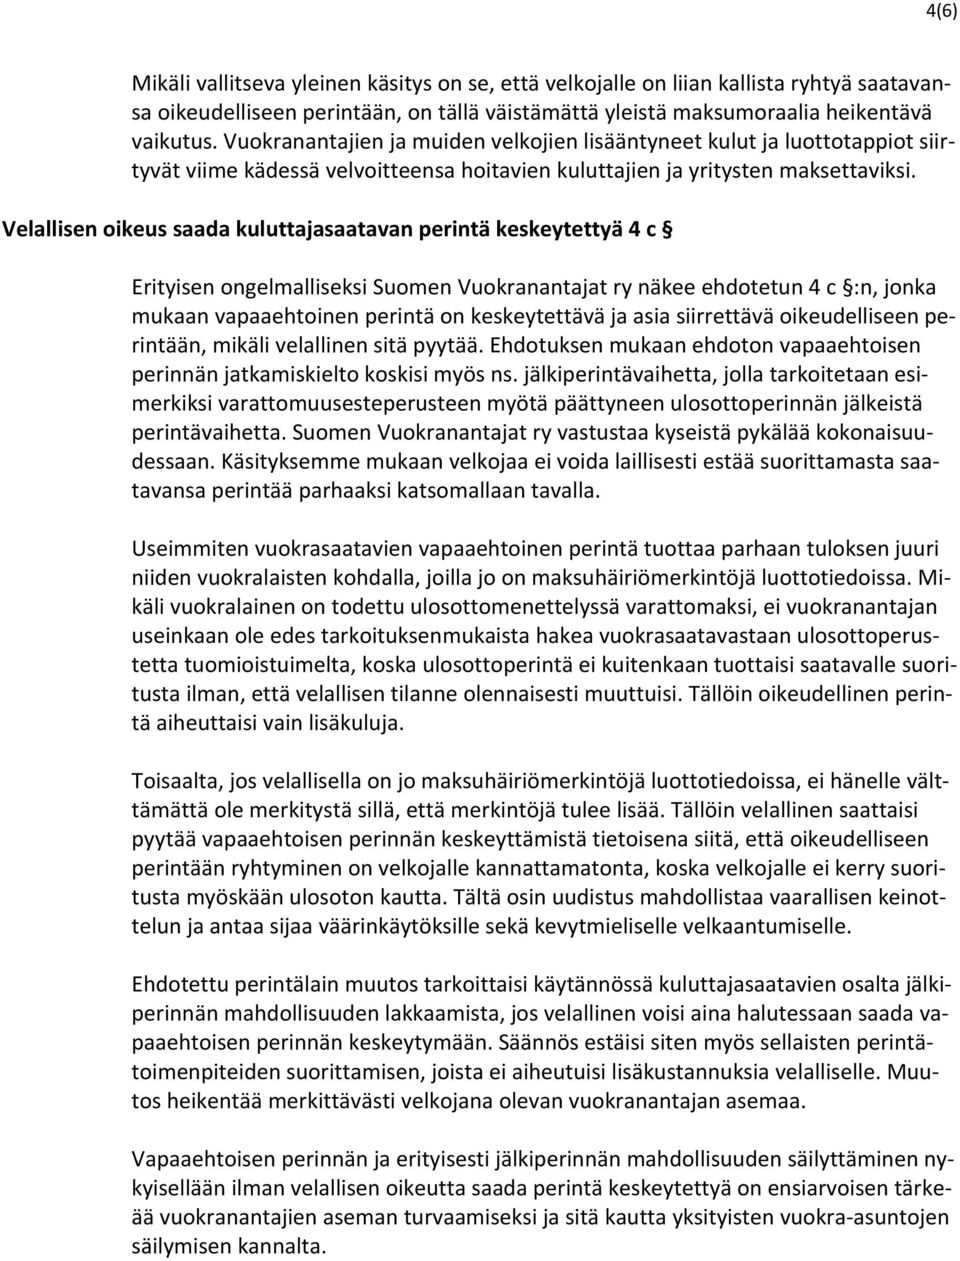 Velallisen oikeus saada kuluttajasaatavan perintä keskeytettyä 4 c Erityisen ongelmalliseksi Suomen Vuokranantajat ry näkee ehdotetun 4 c :n, jonka mukaan vapaaehtoinen perintä on keskeytettävä ja